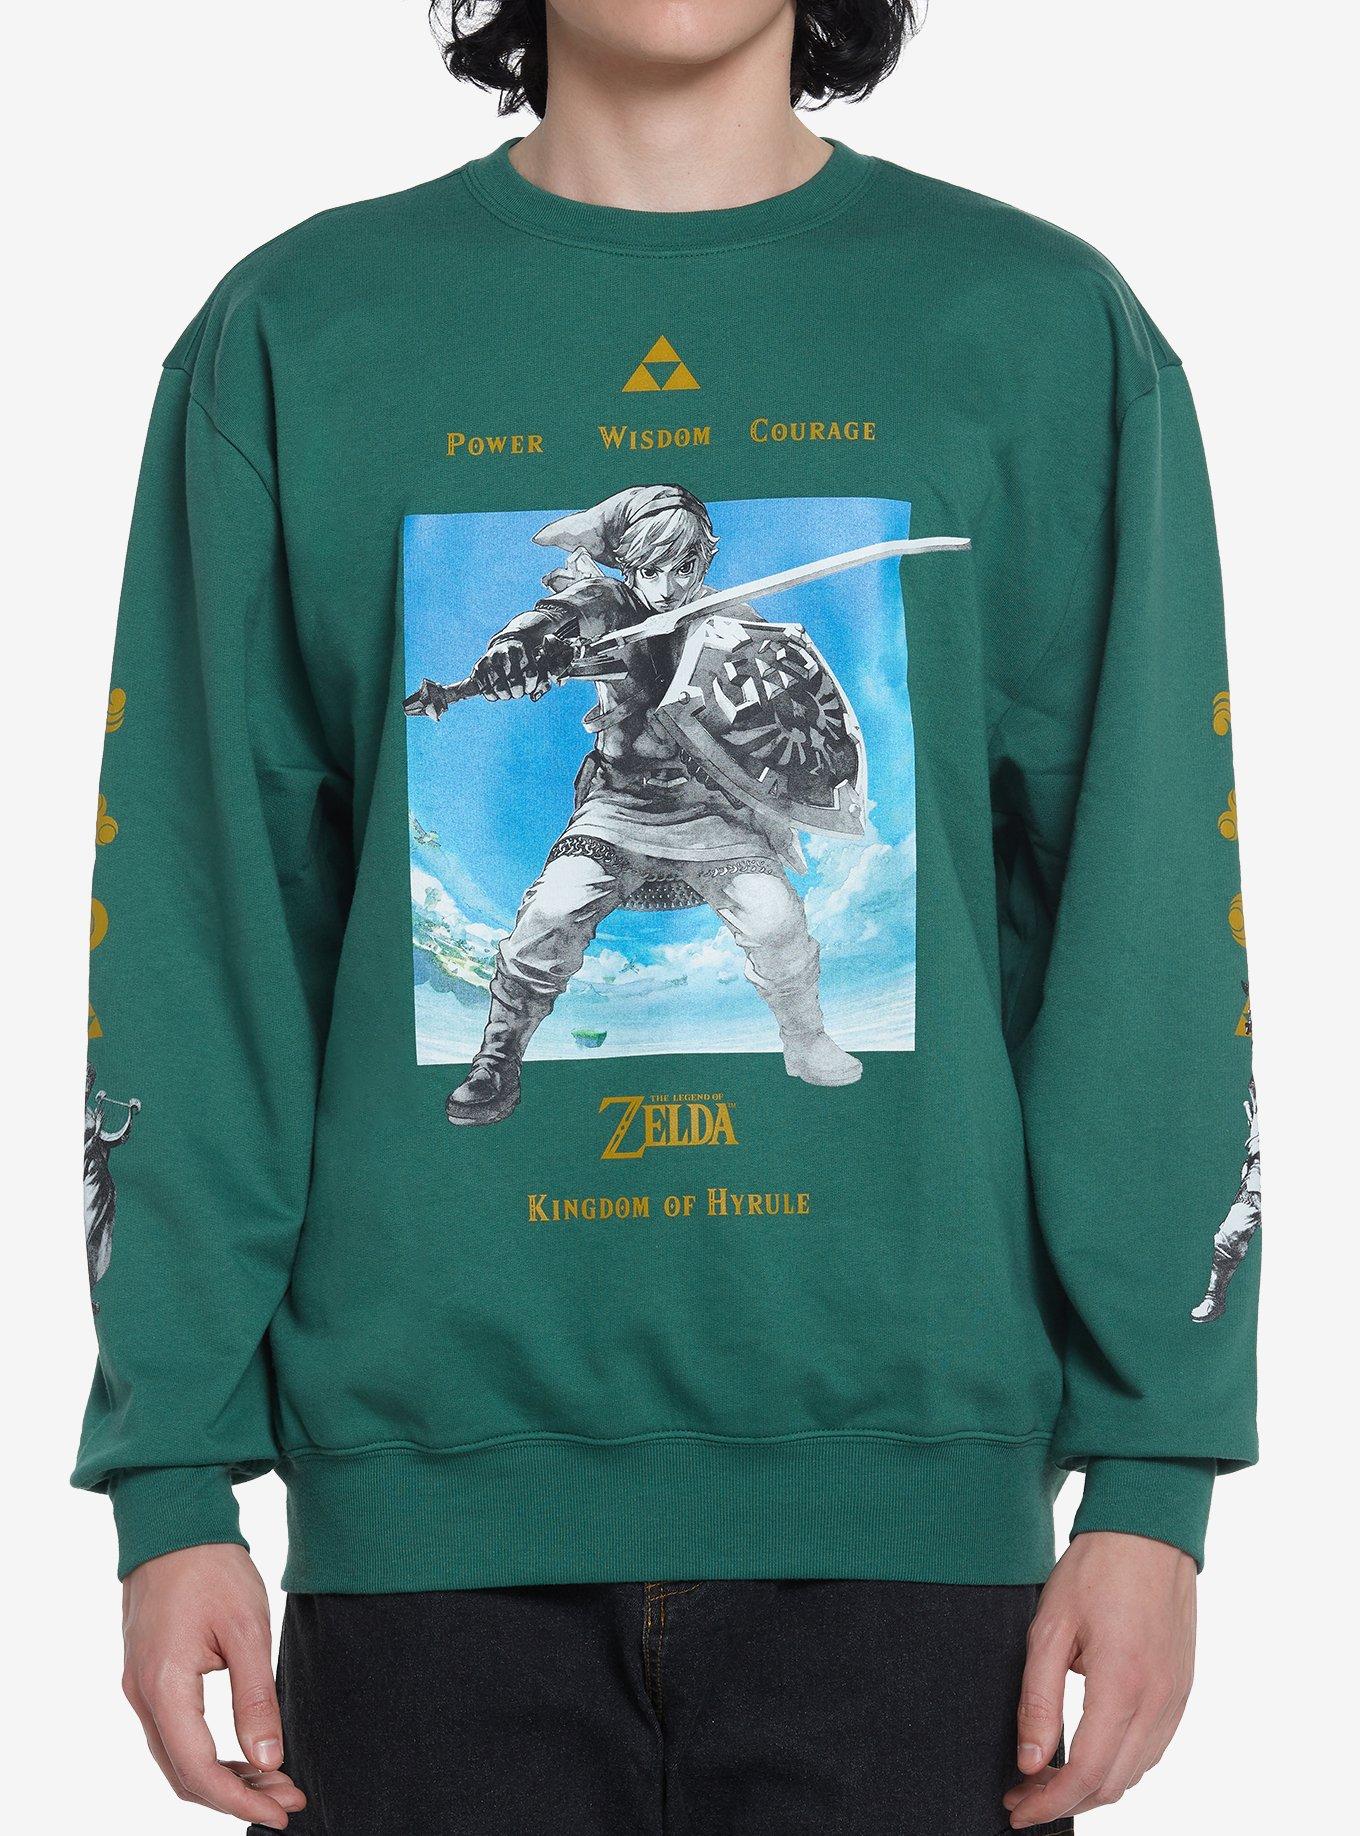 Zelda gamer legends never die shirt, hoodie, sweater, long sleeve